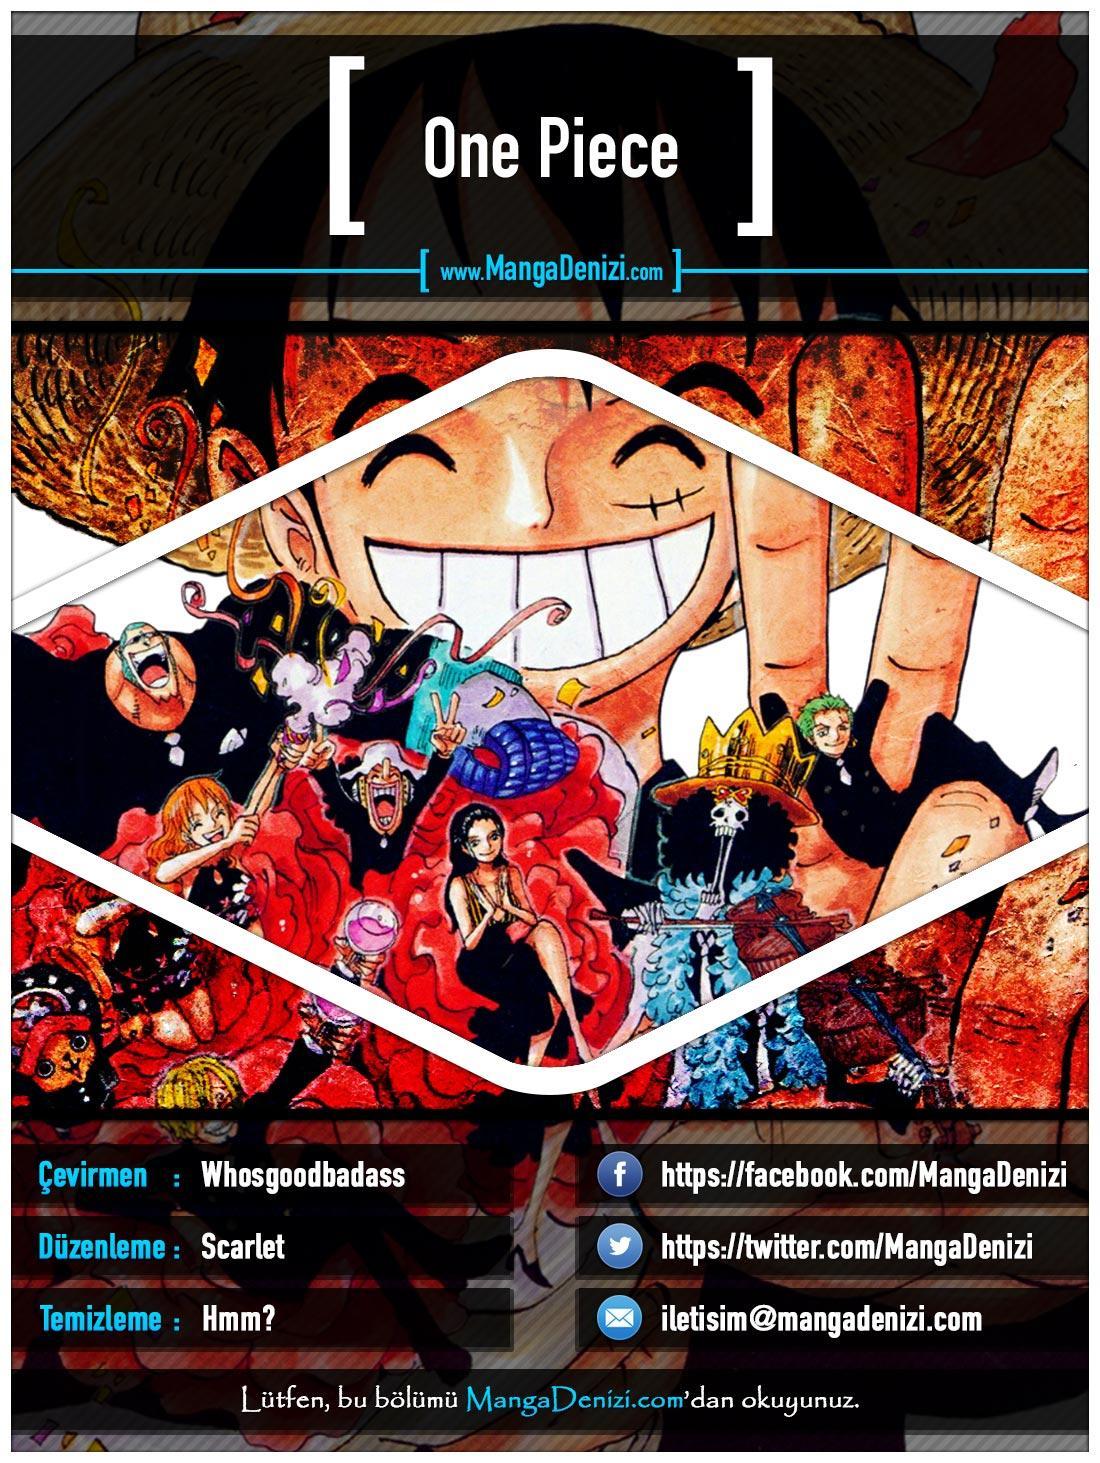 One Piece [Renkli] mangasının 0655 bölümünün 1. sayfasını okuyorsunuz.